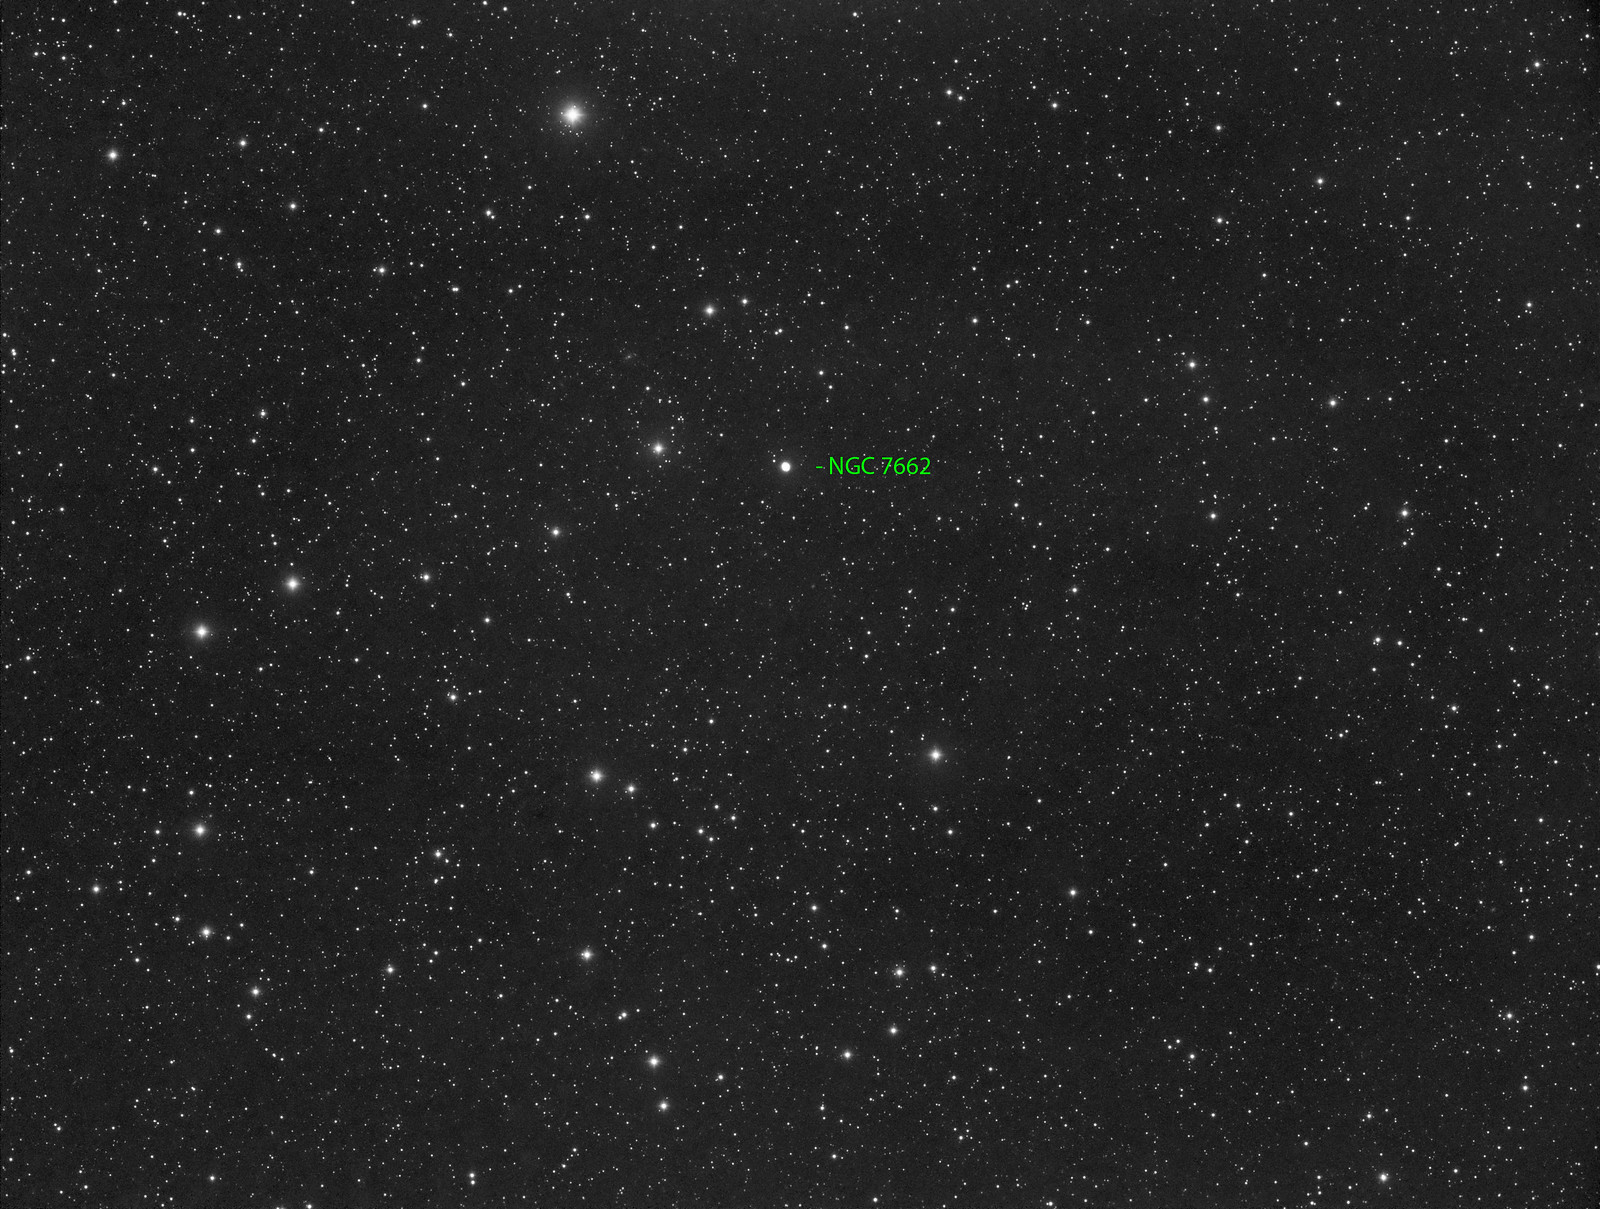 022 - NGC 7662 - Luminance